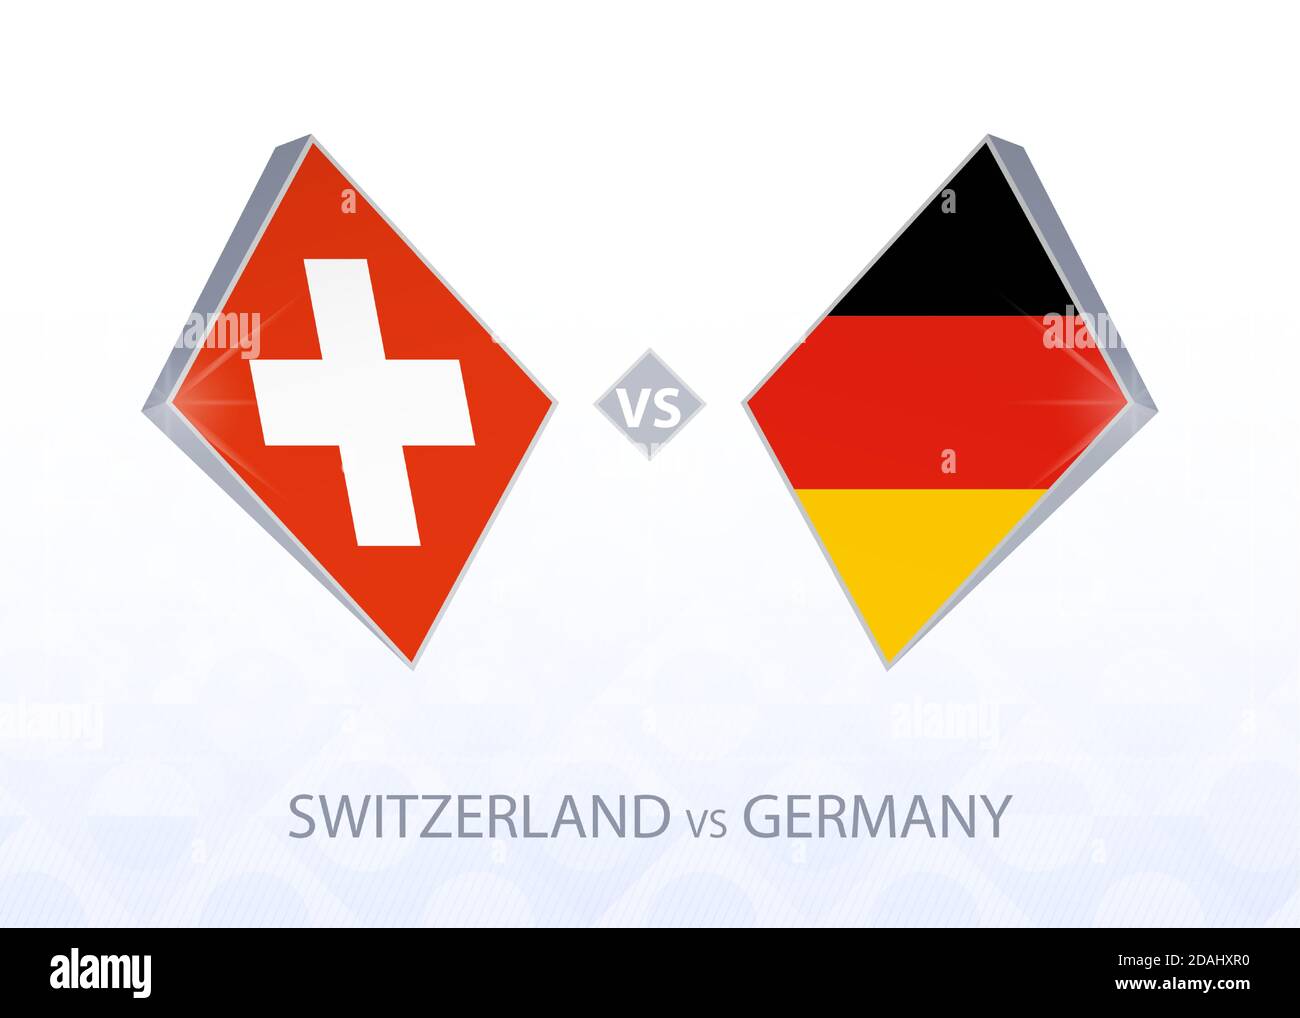 Europa Fußball-Wettbewerb Schweiz gegen Deutschland, Liga A, Gruppe 4.  Vektorgrafik Stock-Vektorgrafik - Alamy